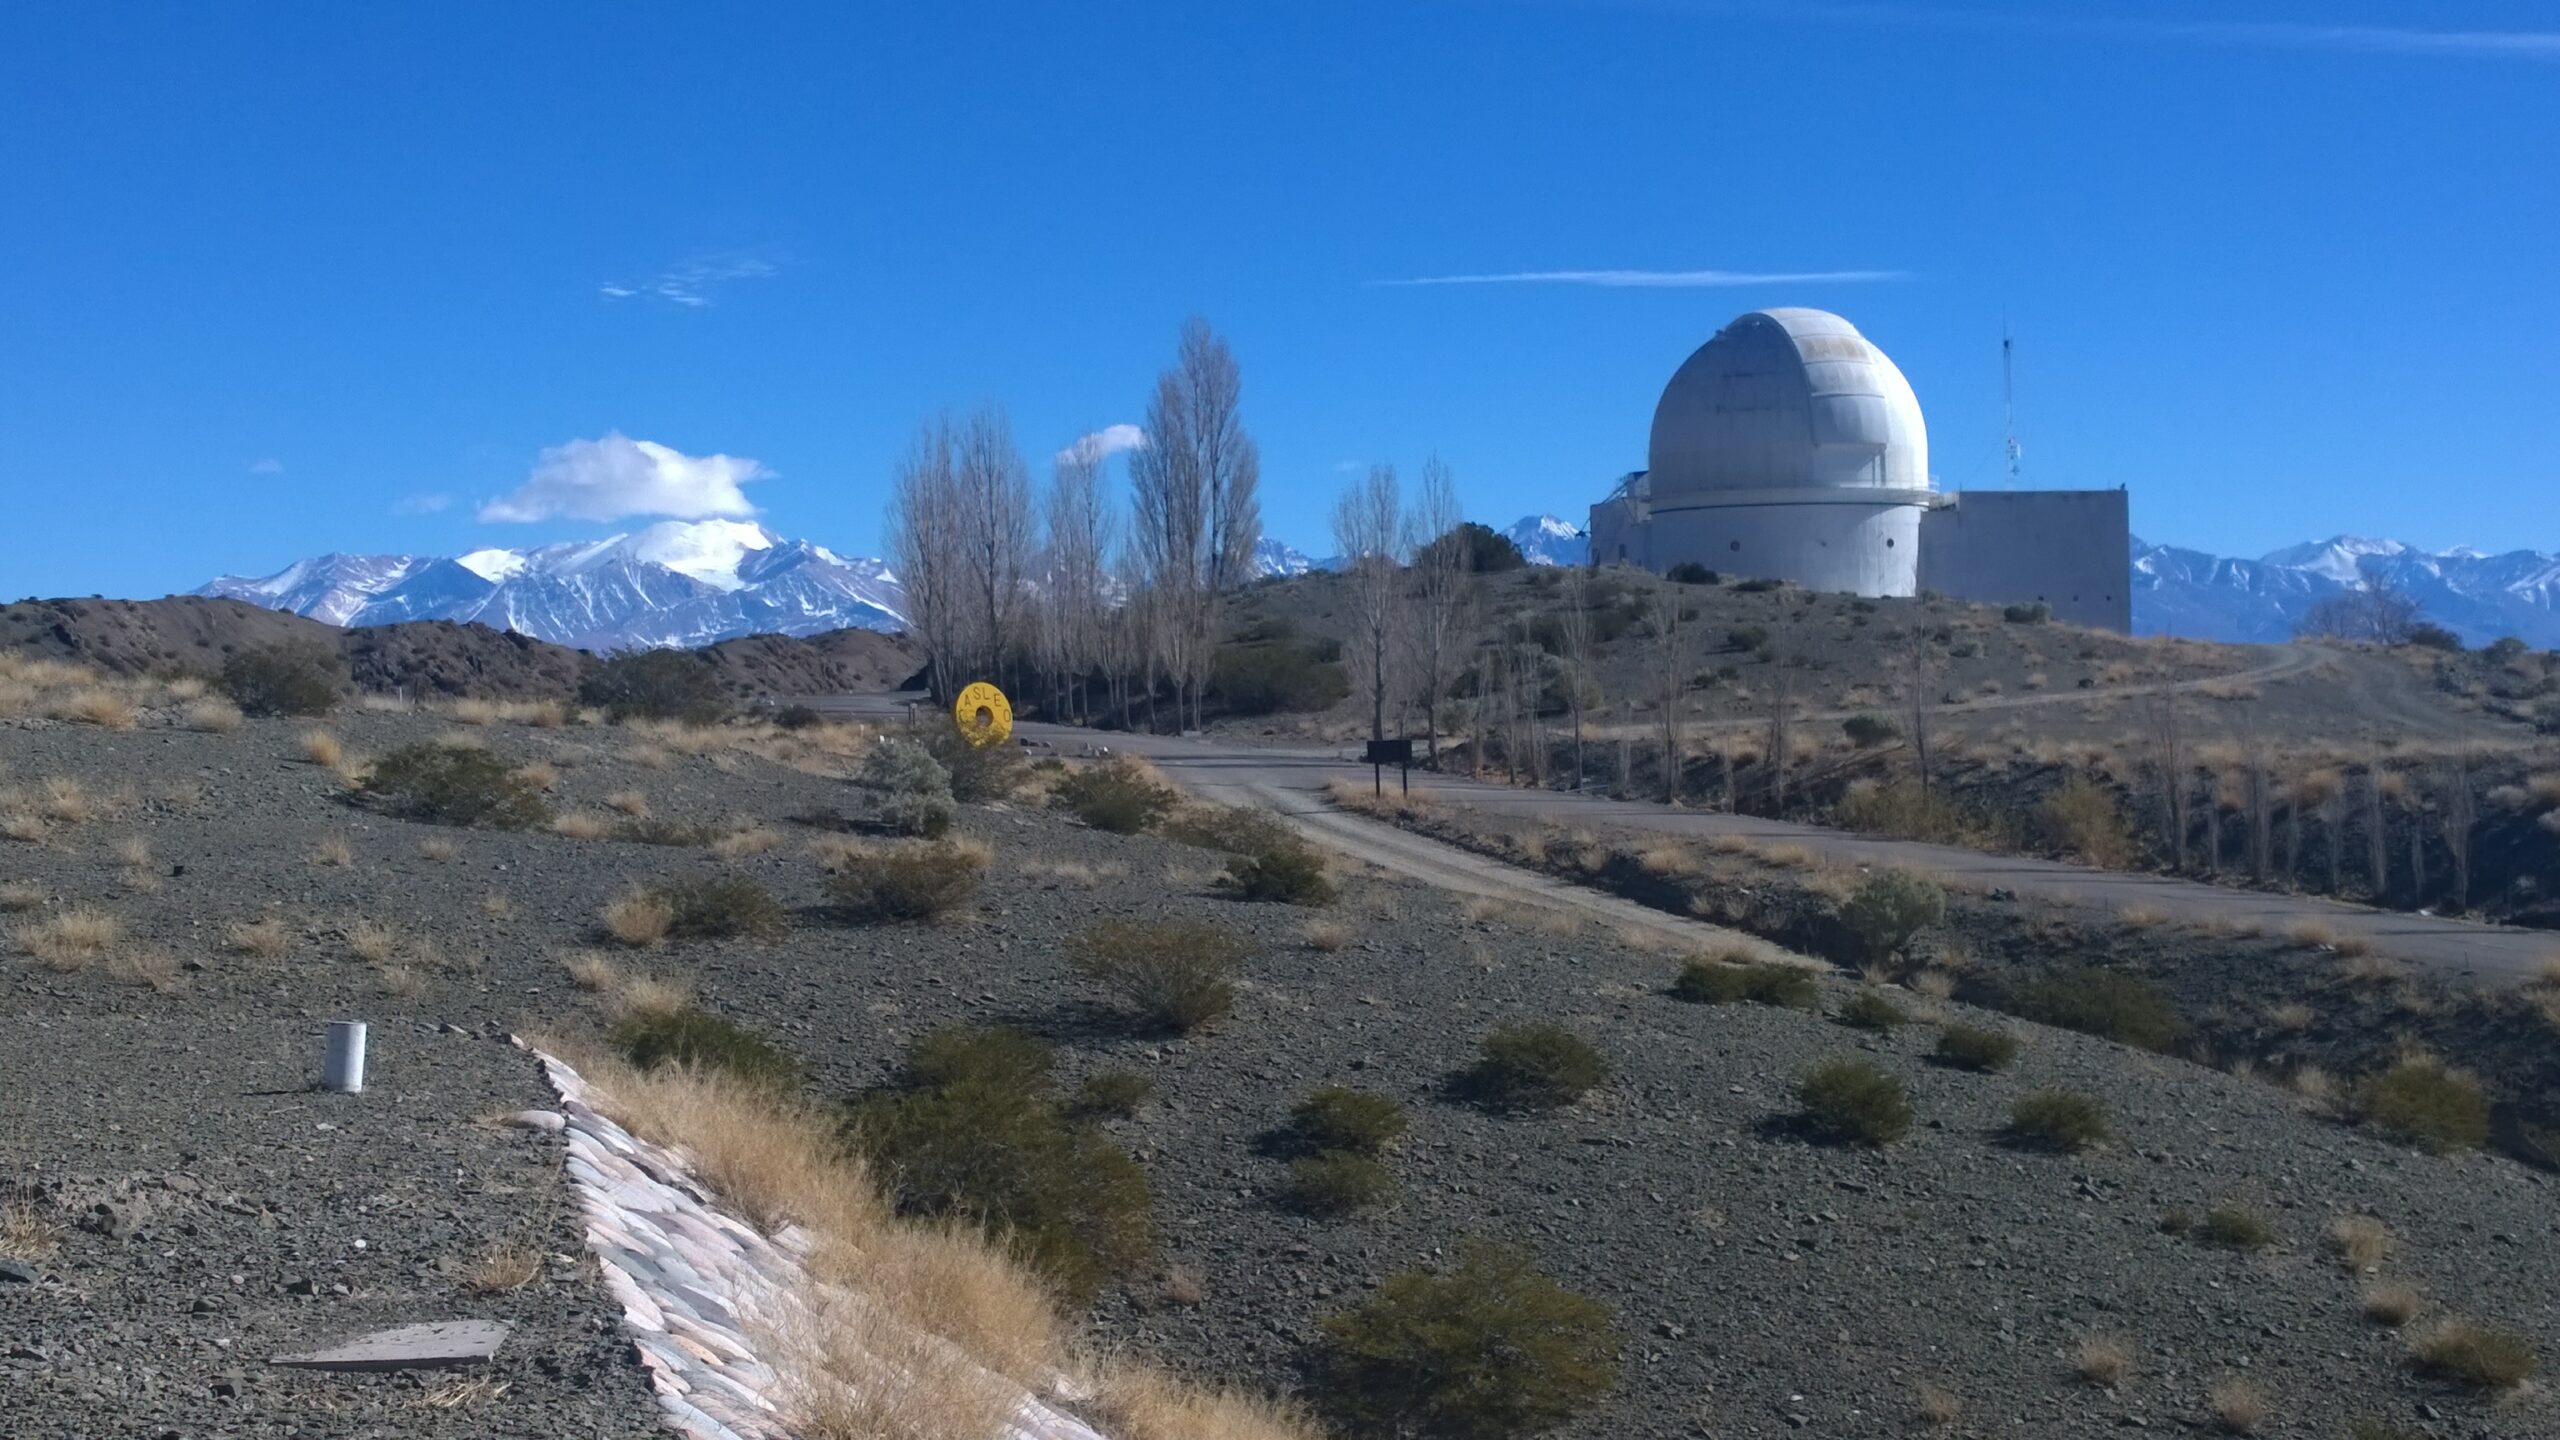 La imagen muestra el Complejo Astronómico El Leoncito. Se observa un paisaje con la Cordillera de los Andes de fondo, un camino y a su derecha, la cúpula del telescopio principal del observatorio.